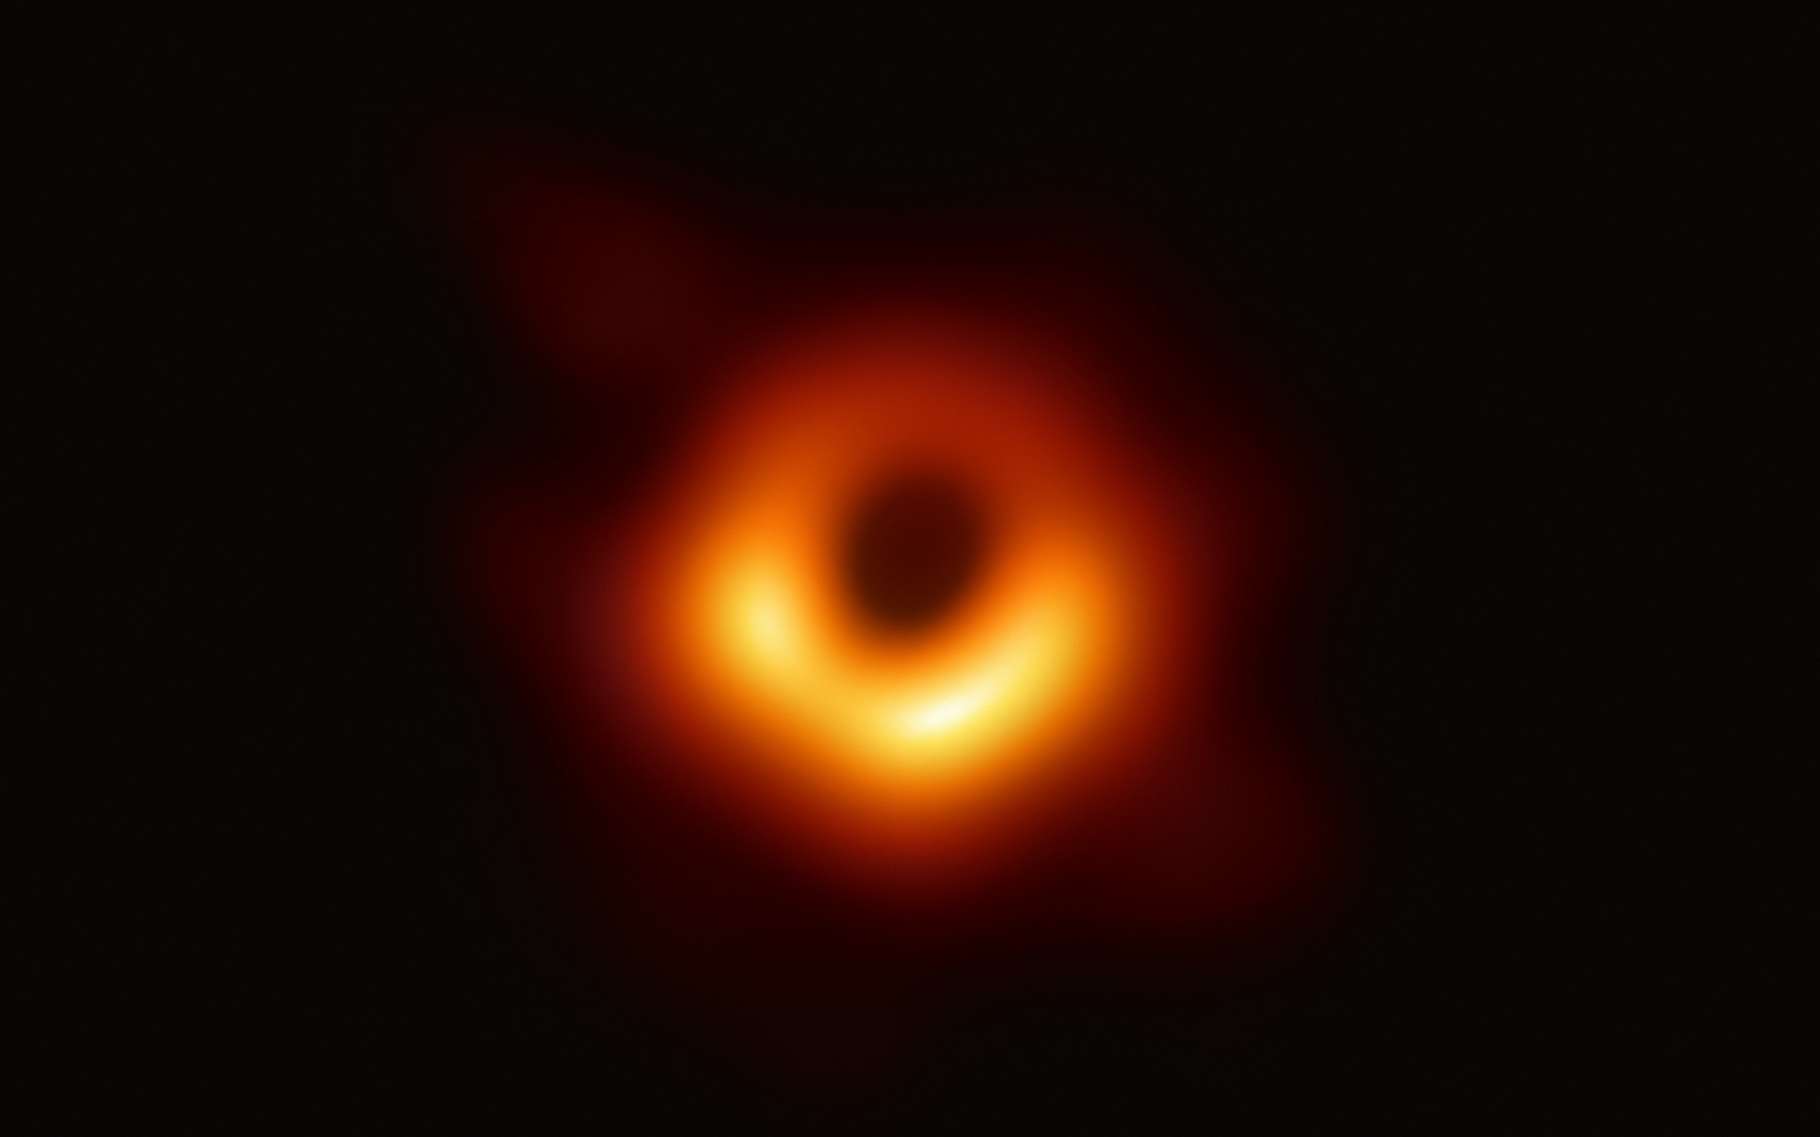 Première image d'un trou noir supermassif. © Event Horizon Telescope